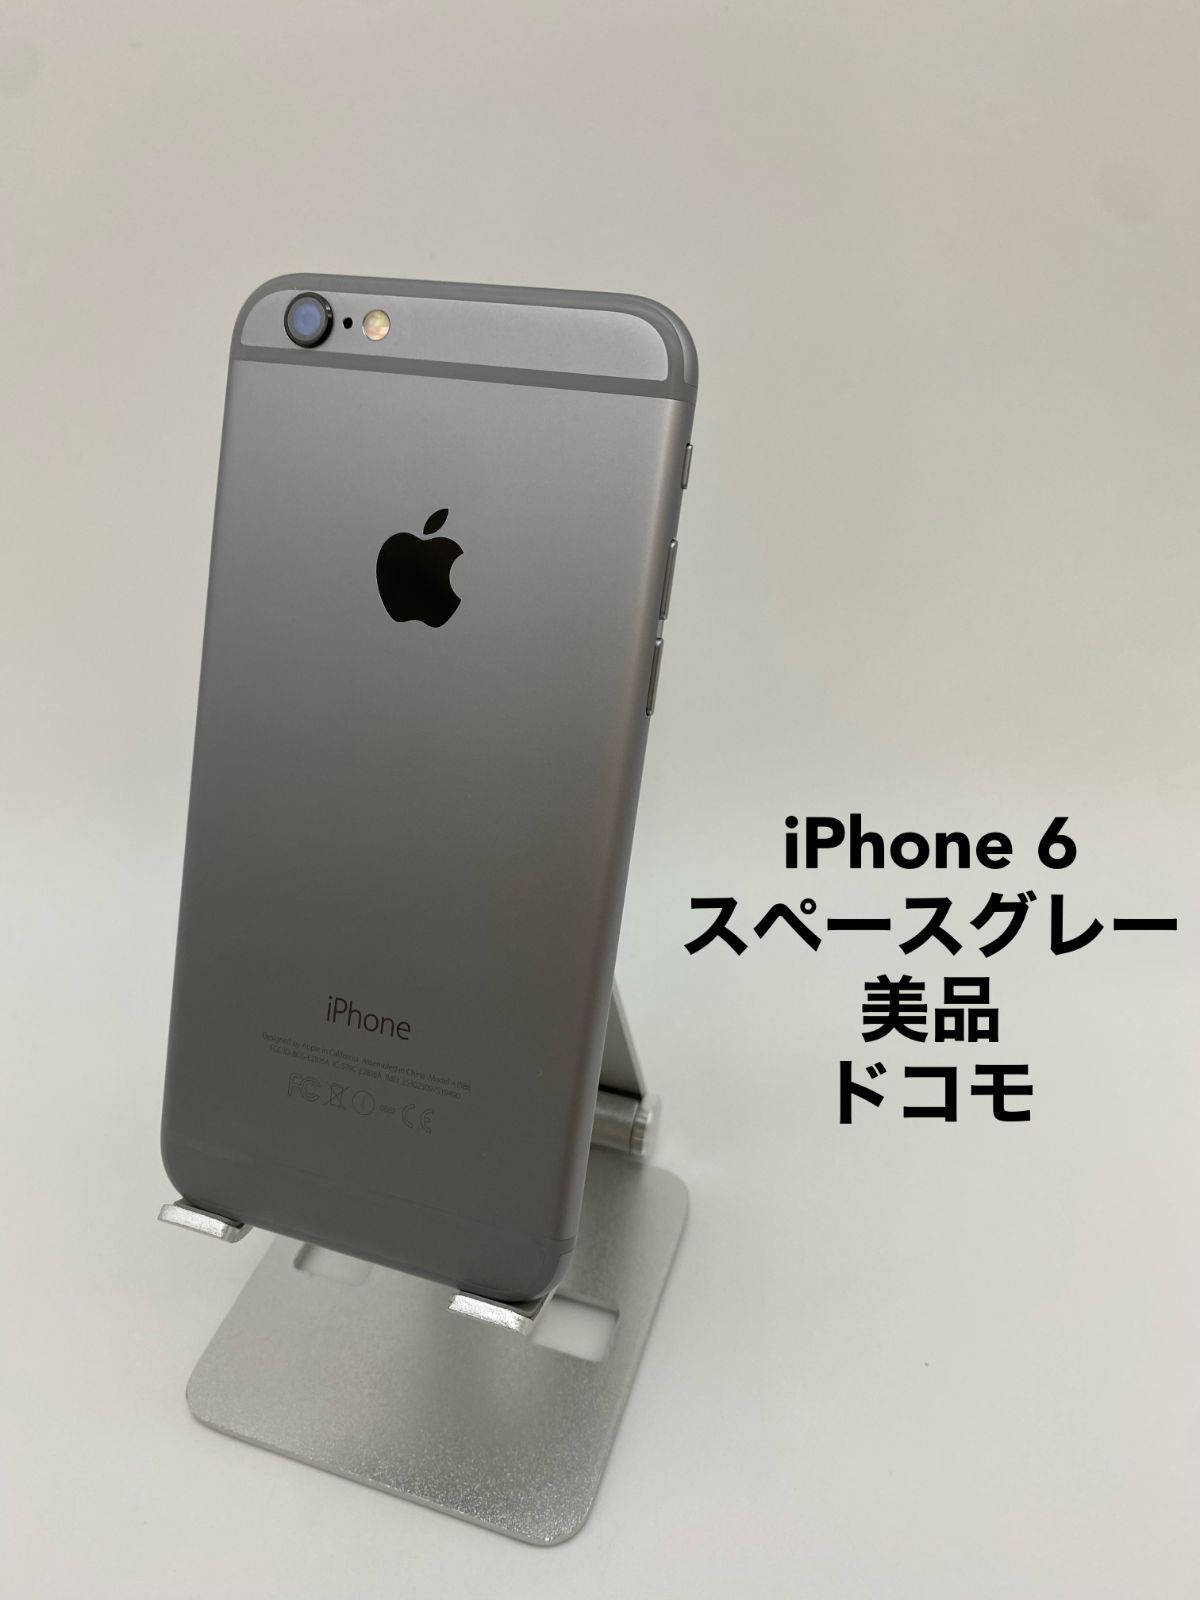 美品】iPhone6 64GB docomo スペースグレイ - ドコモ